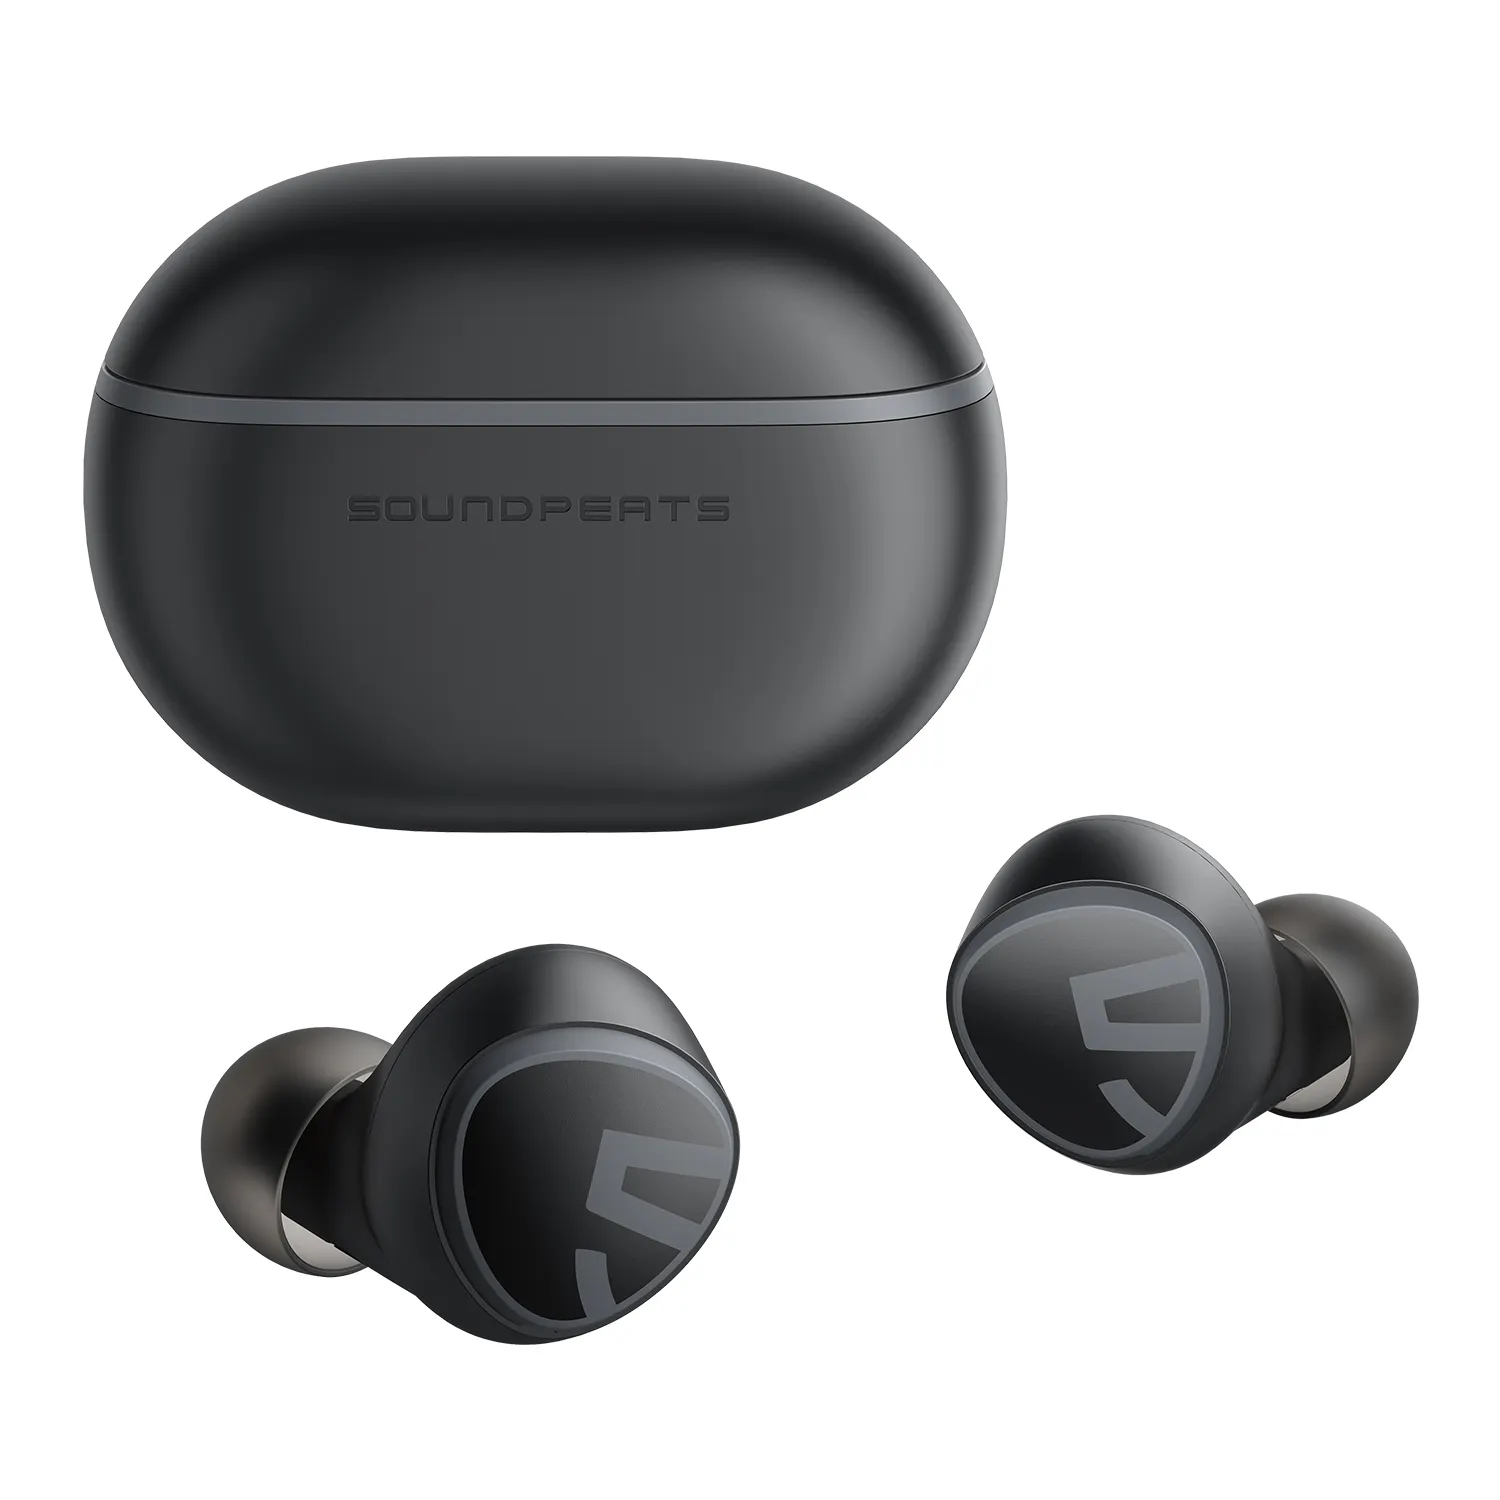 SoundPEATS Mini Good sound auricolari TWS impermeabili originali cuffie Stereo cuffie wireless per telefono cellulare